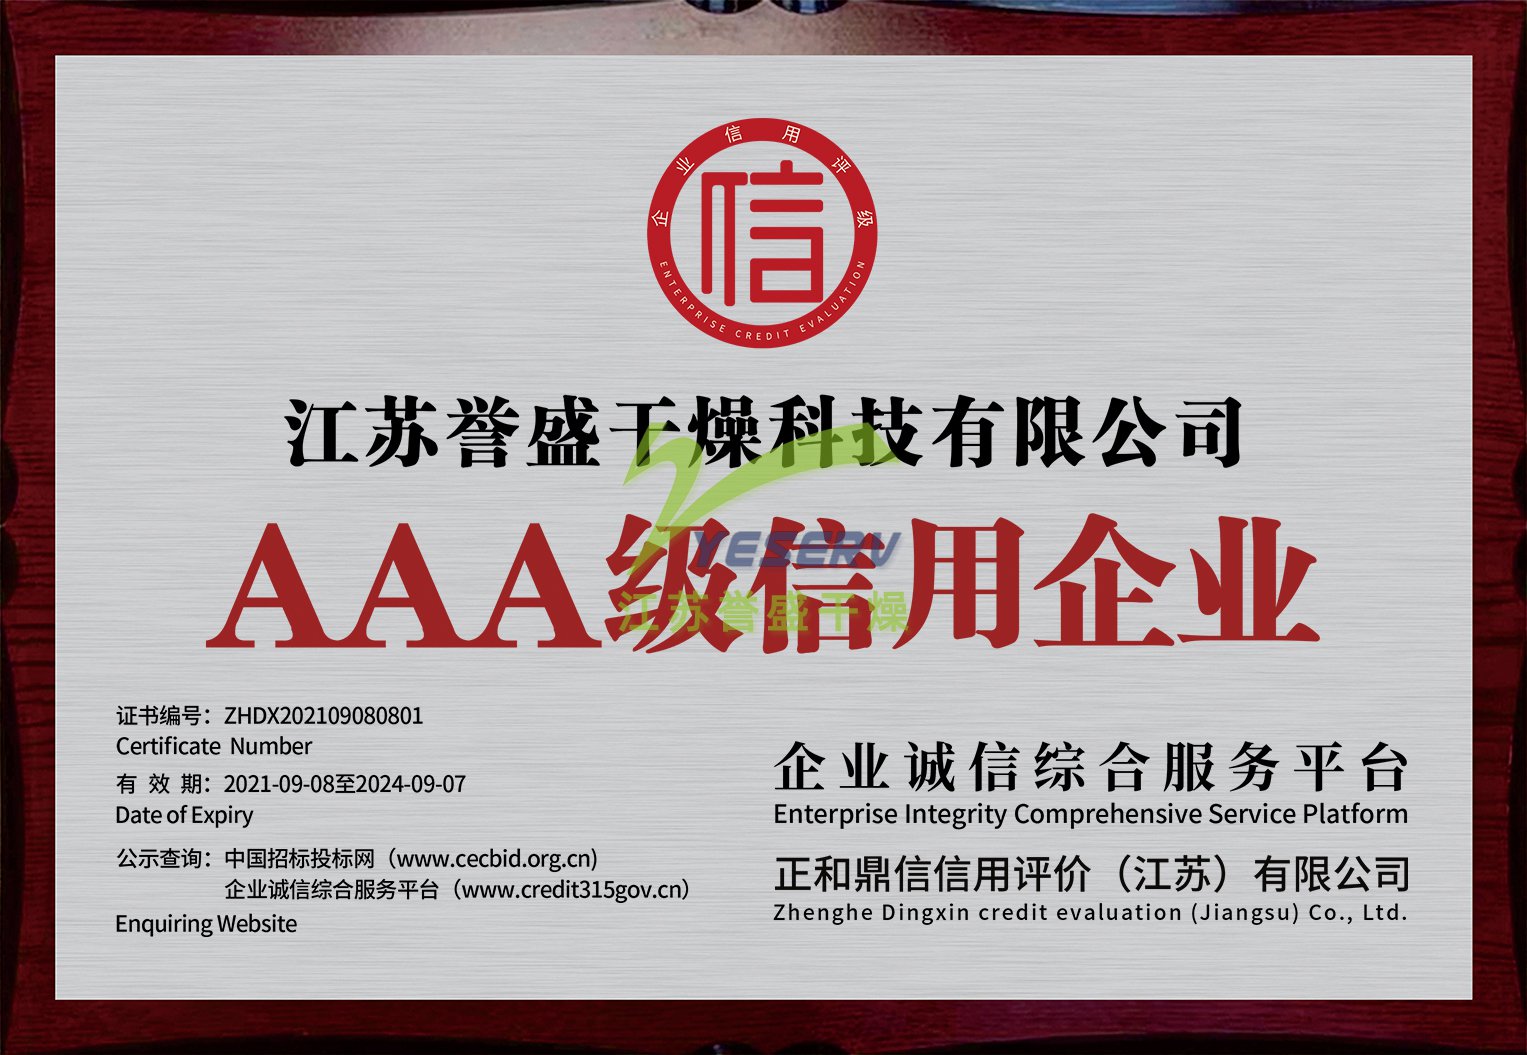 江苏誉盛干燥科技有限公司-AAA级信用企业